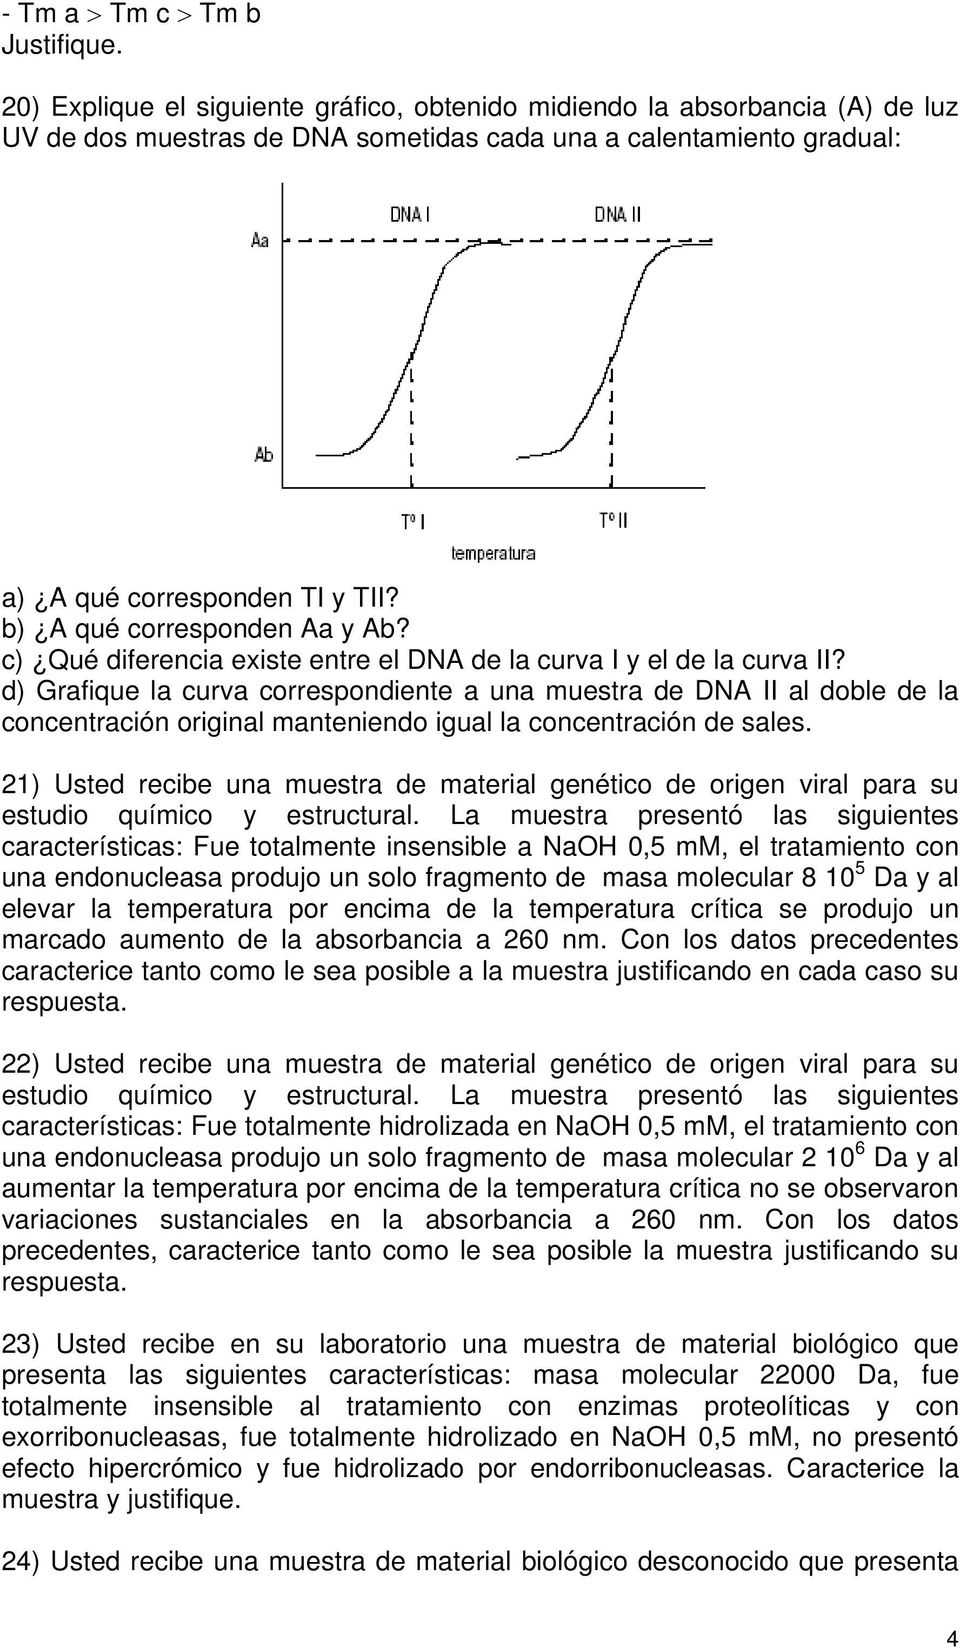 b) A qué corresponden Aa y Ab? c) Qué diferencia existe entre el DNA de la curva I y el de la curva II?